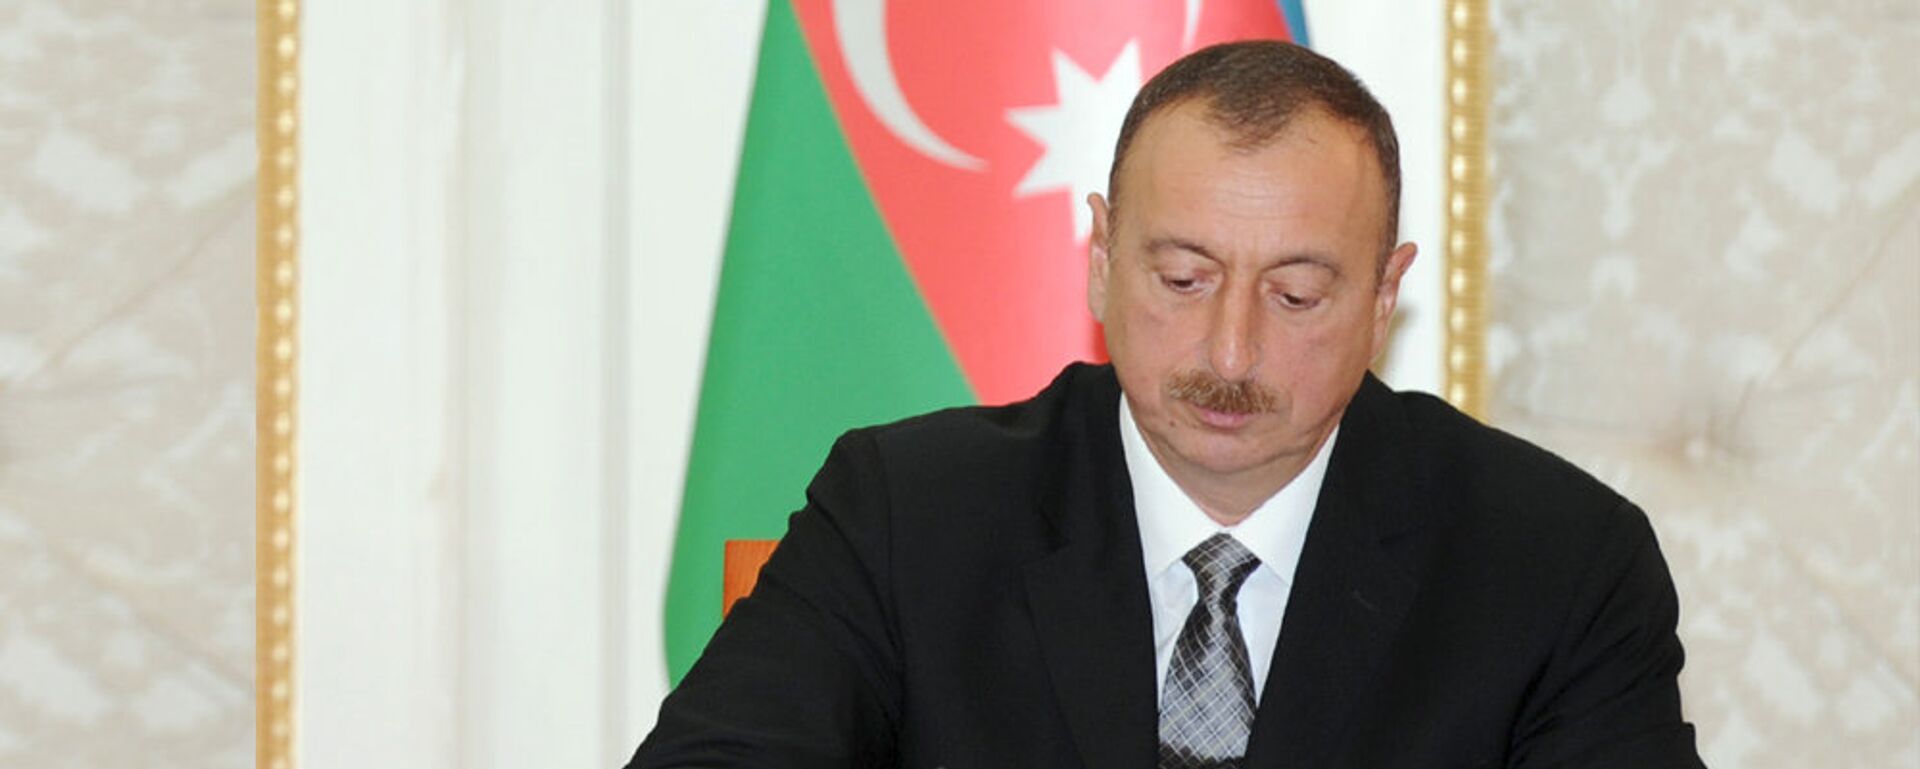 Президент Азербайджана Ильхам Алиев - Sputnik Азербайджан, 1920, 05.04.2021